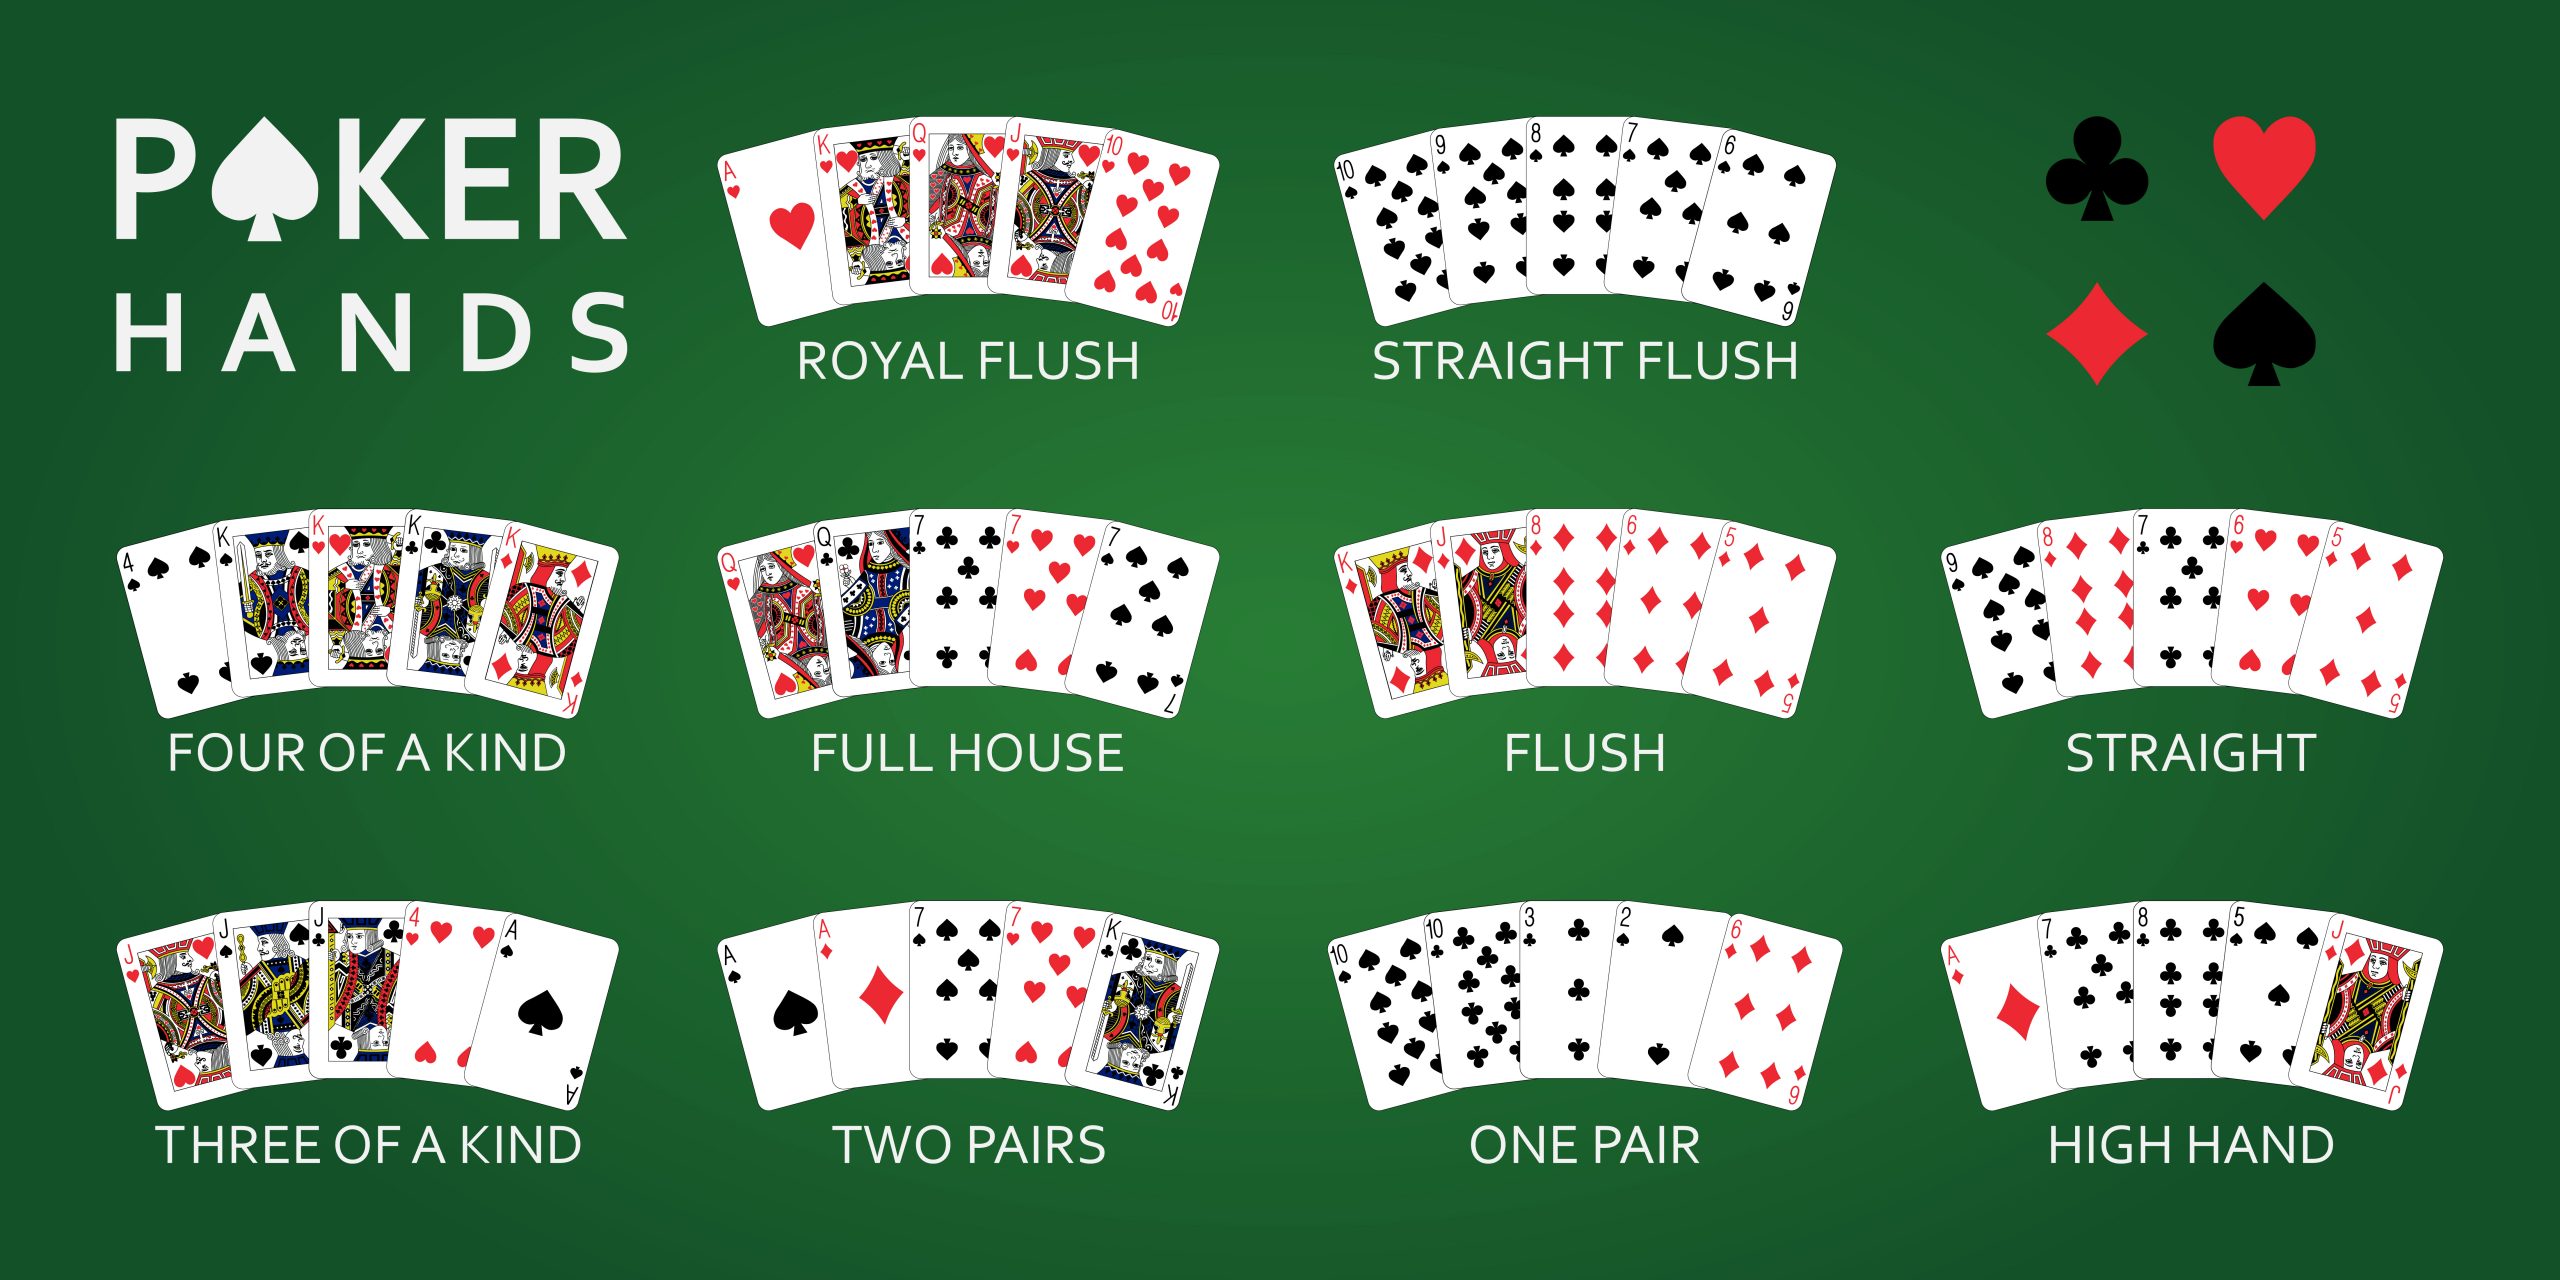 3 card poker vs texas holdem